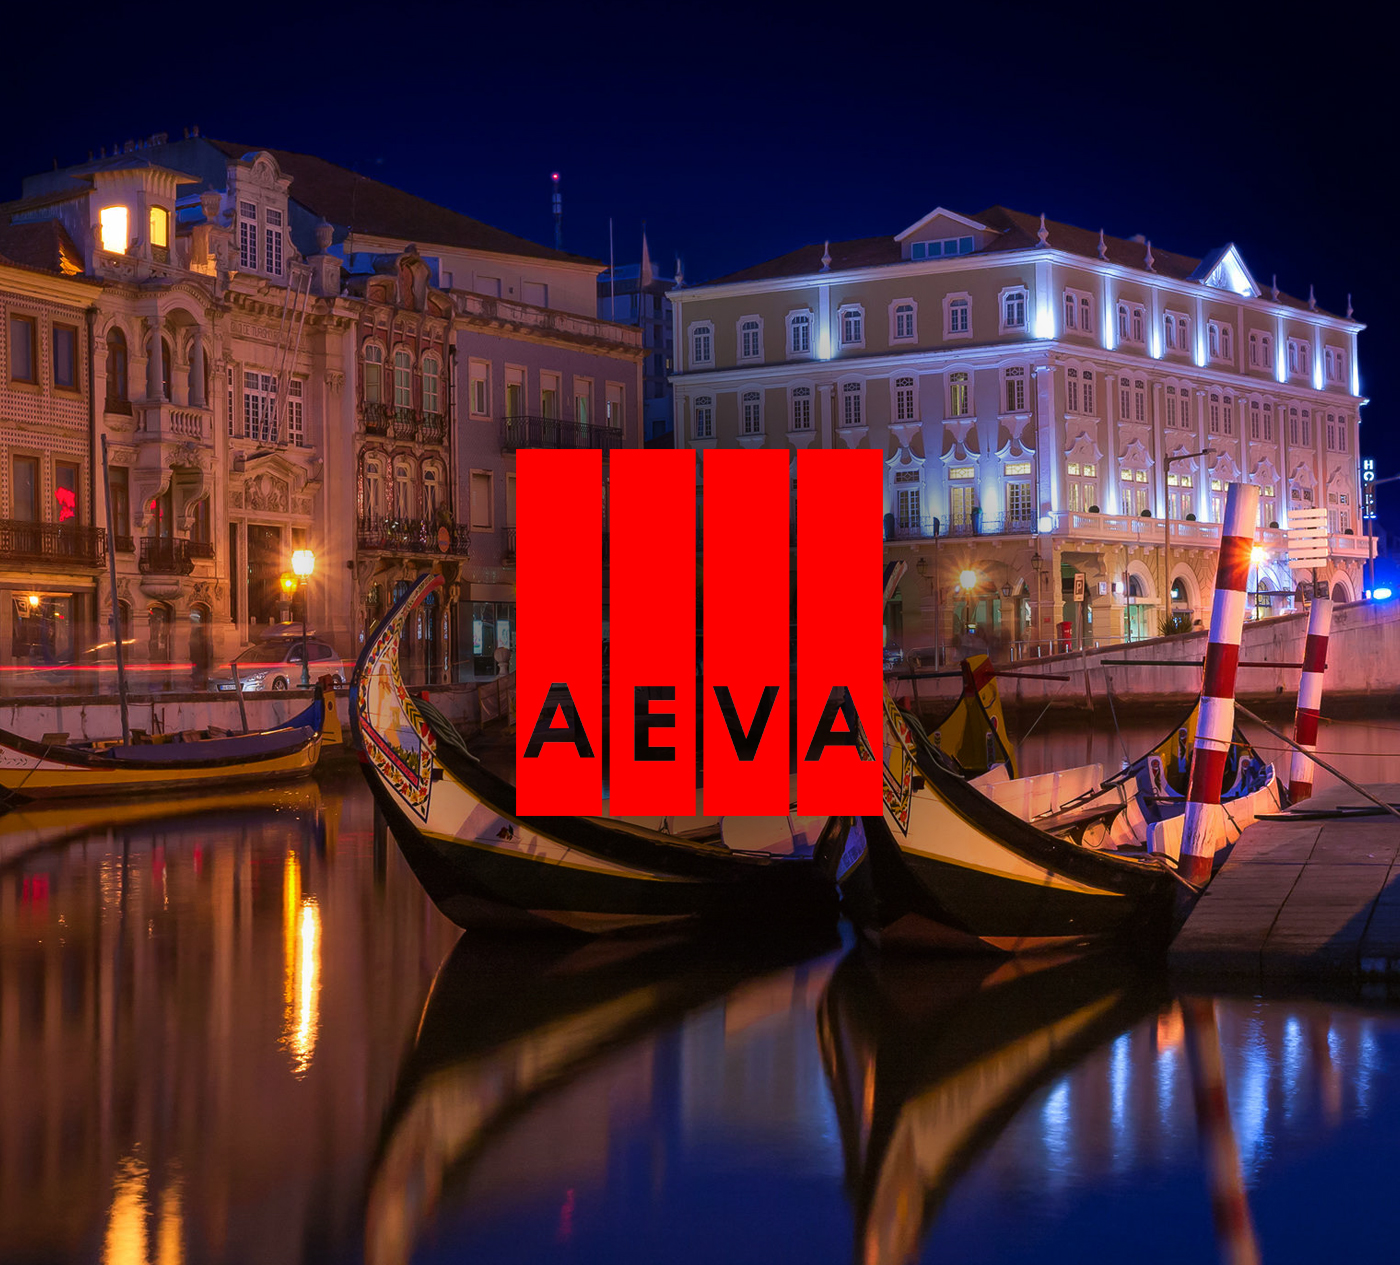 AEVA – Asociación para la Educación y la Valorización de la Región de Aveiro